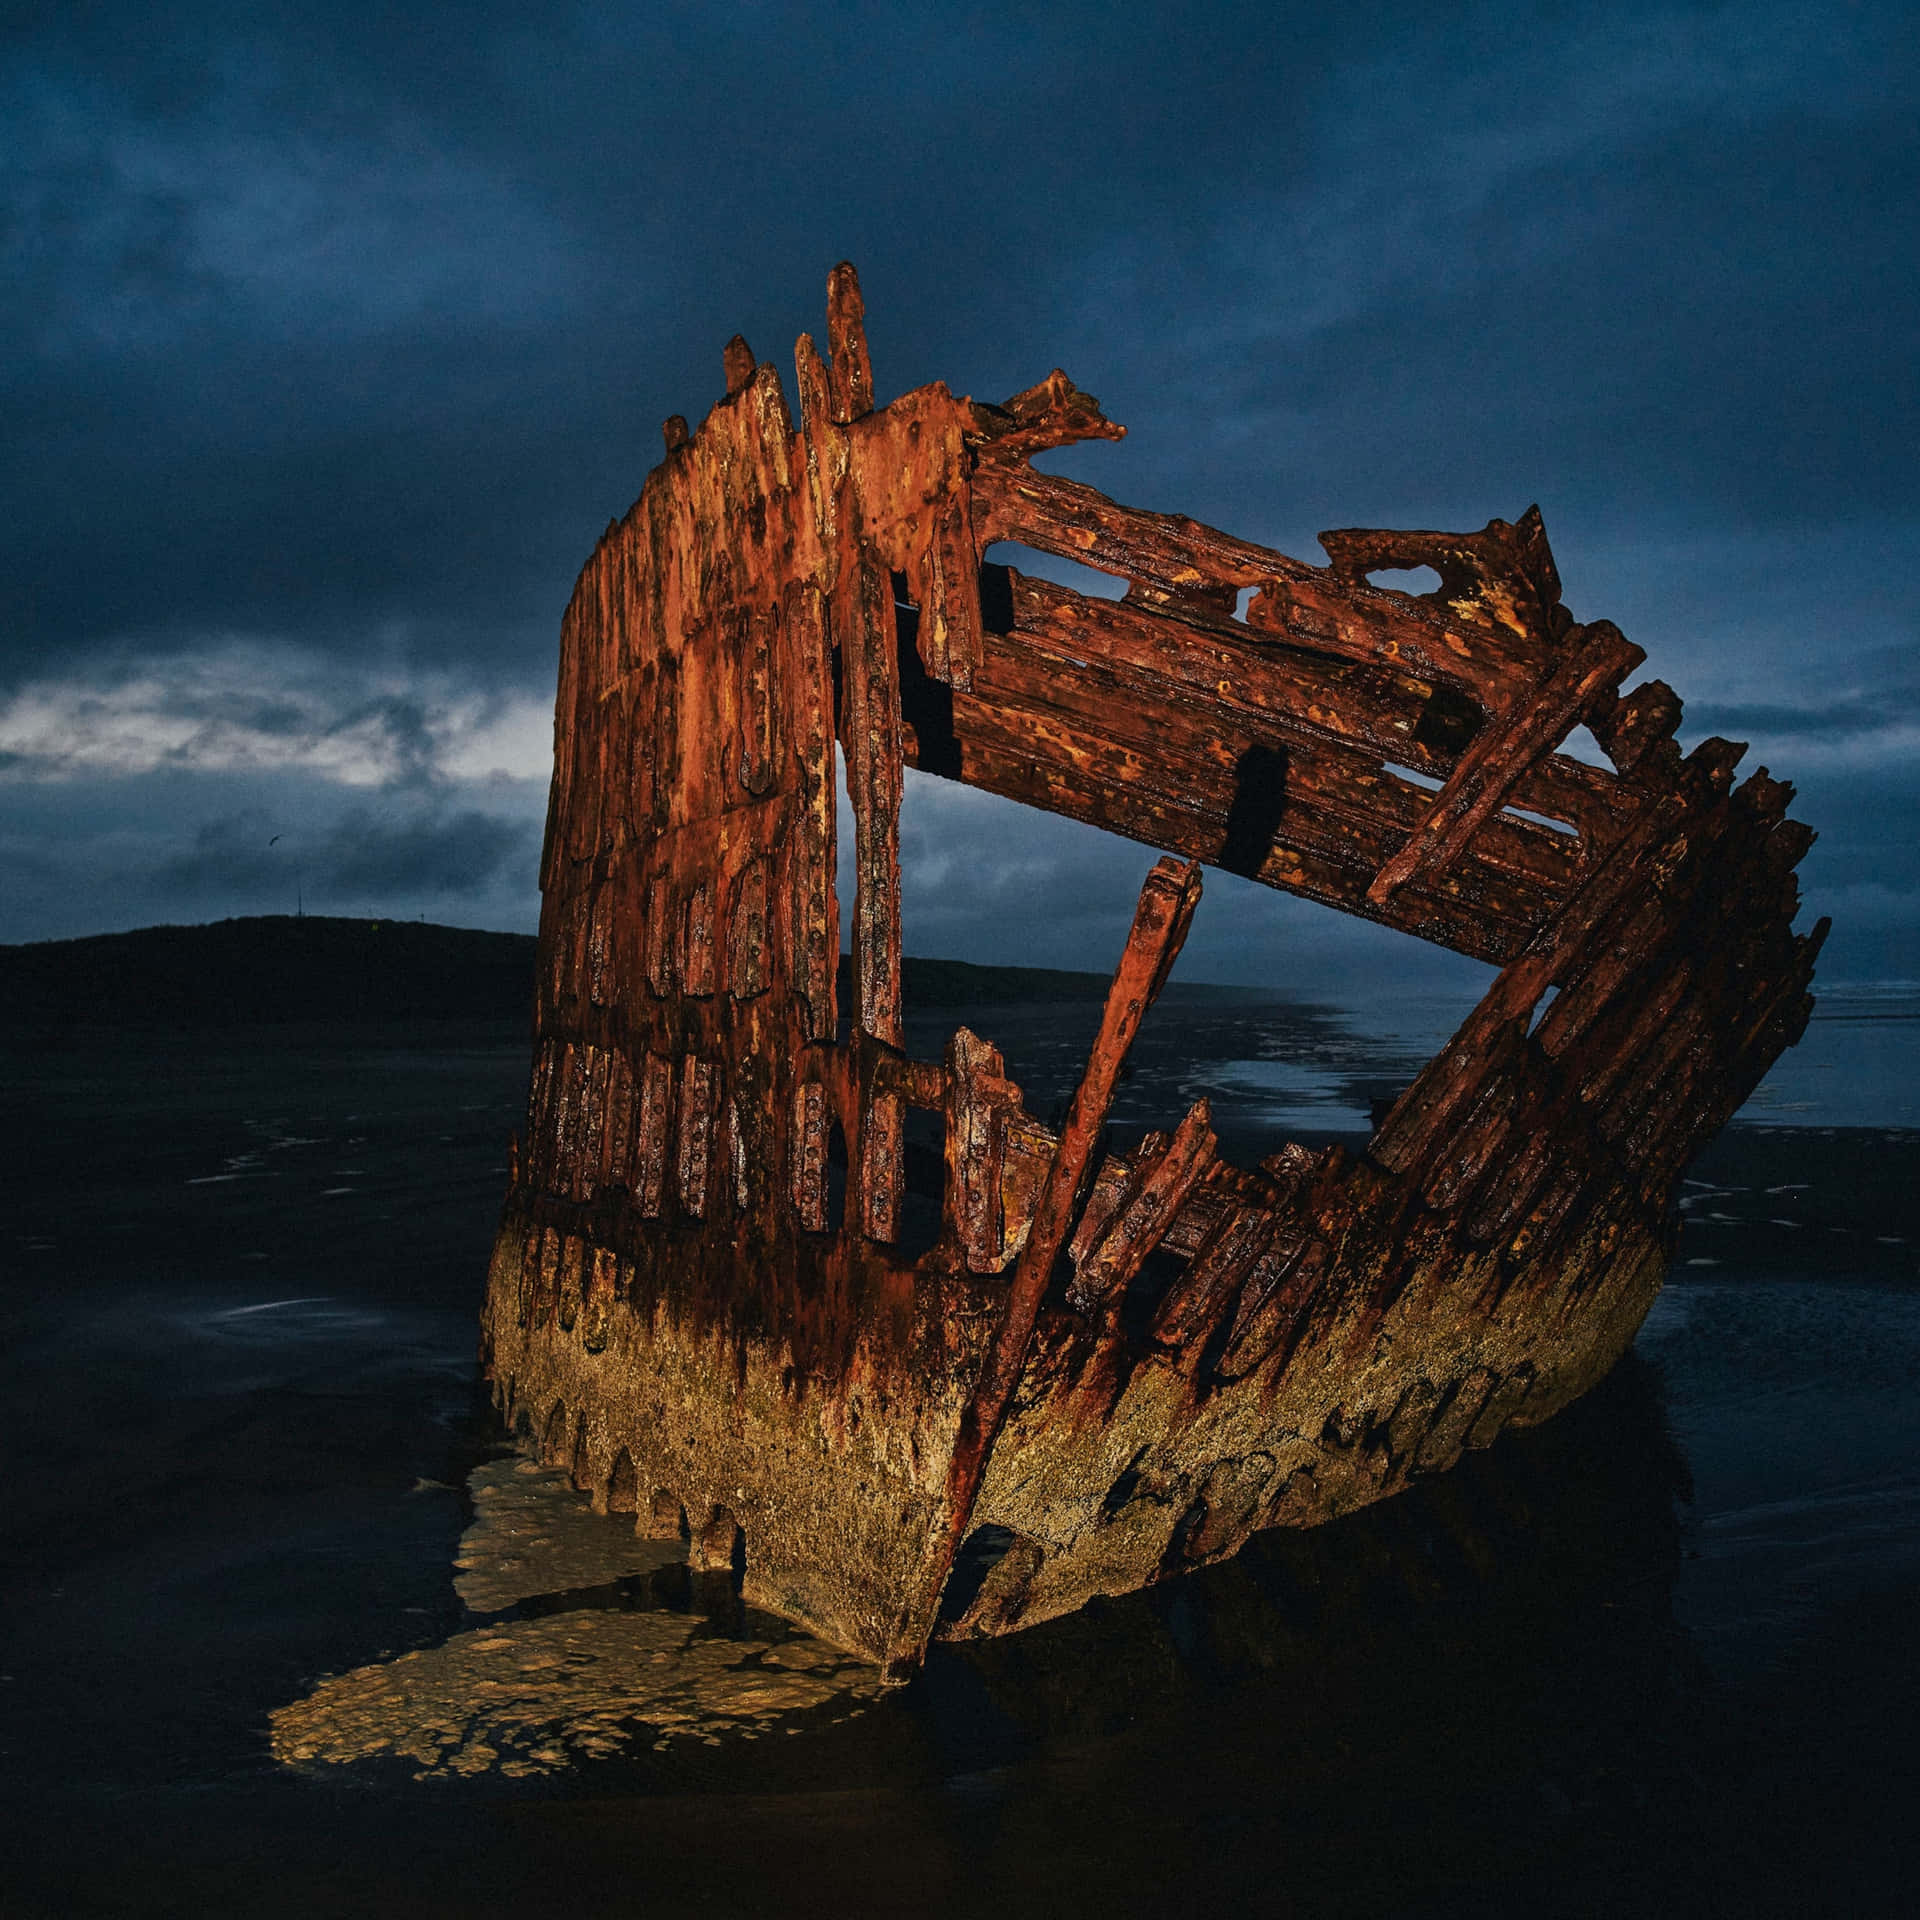 Sunken Secrets: A Stunning View Of An Old Shipwreck Wallpaper